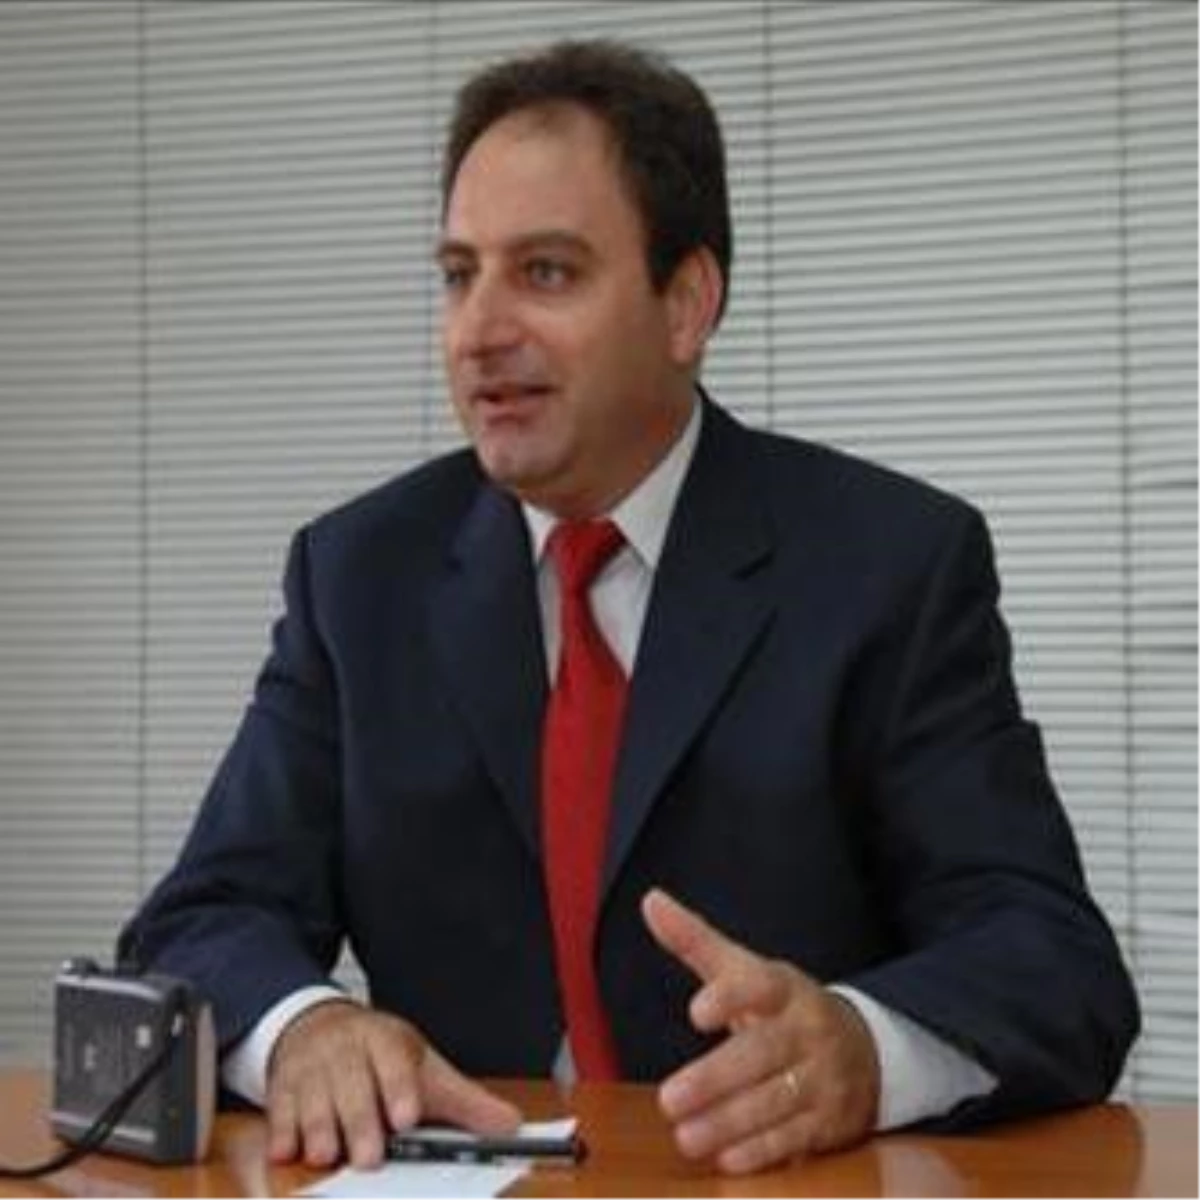 Kıbrıs Rum Yönetimi Sözcüsü Stefanu Açıklaması